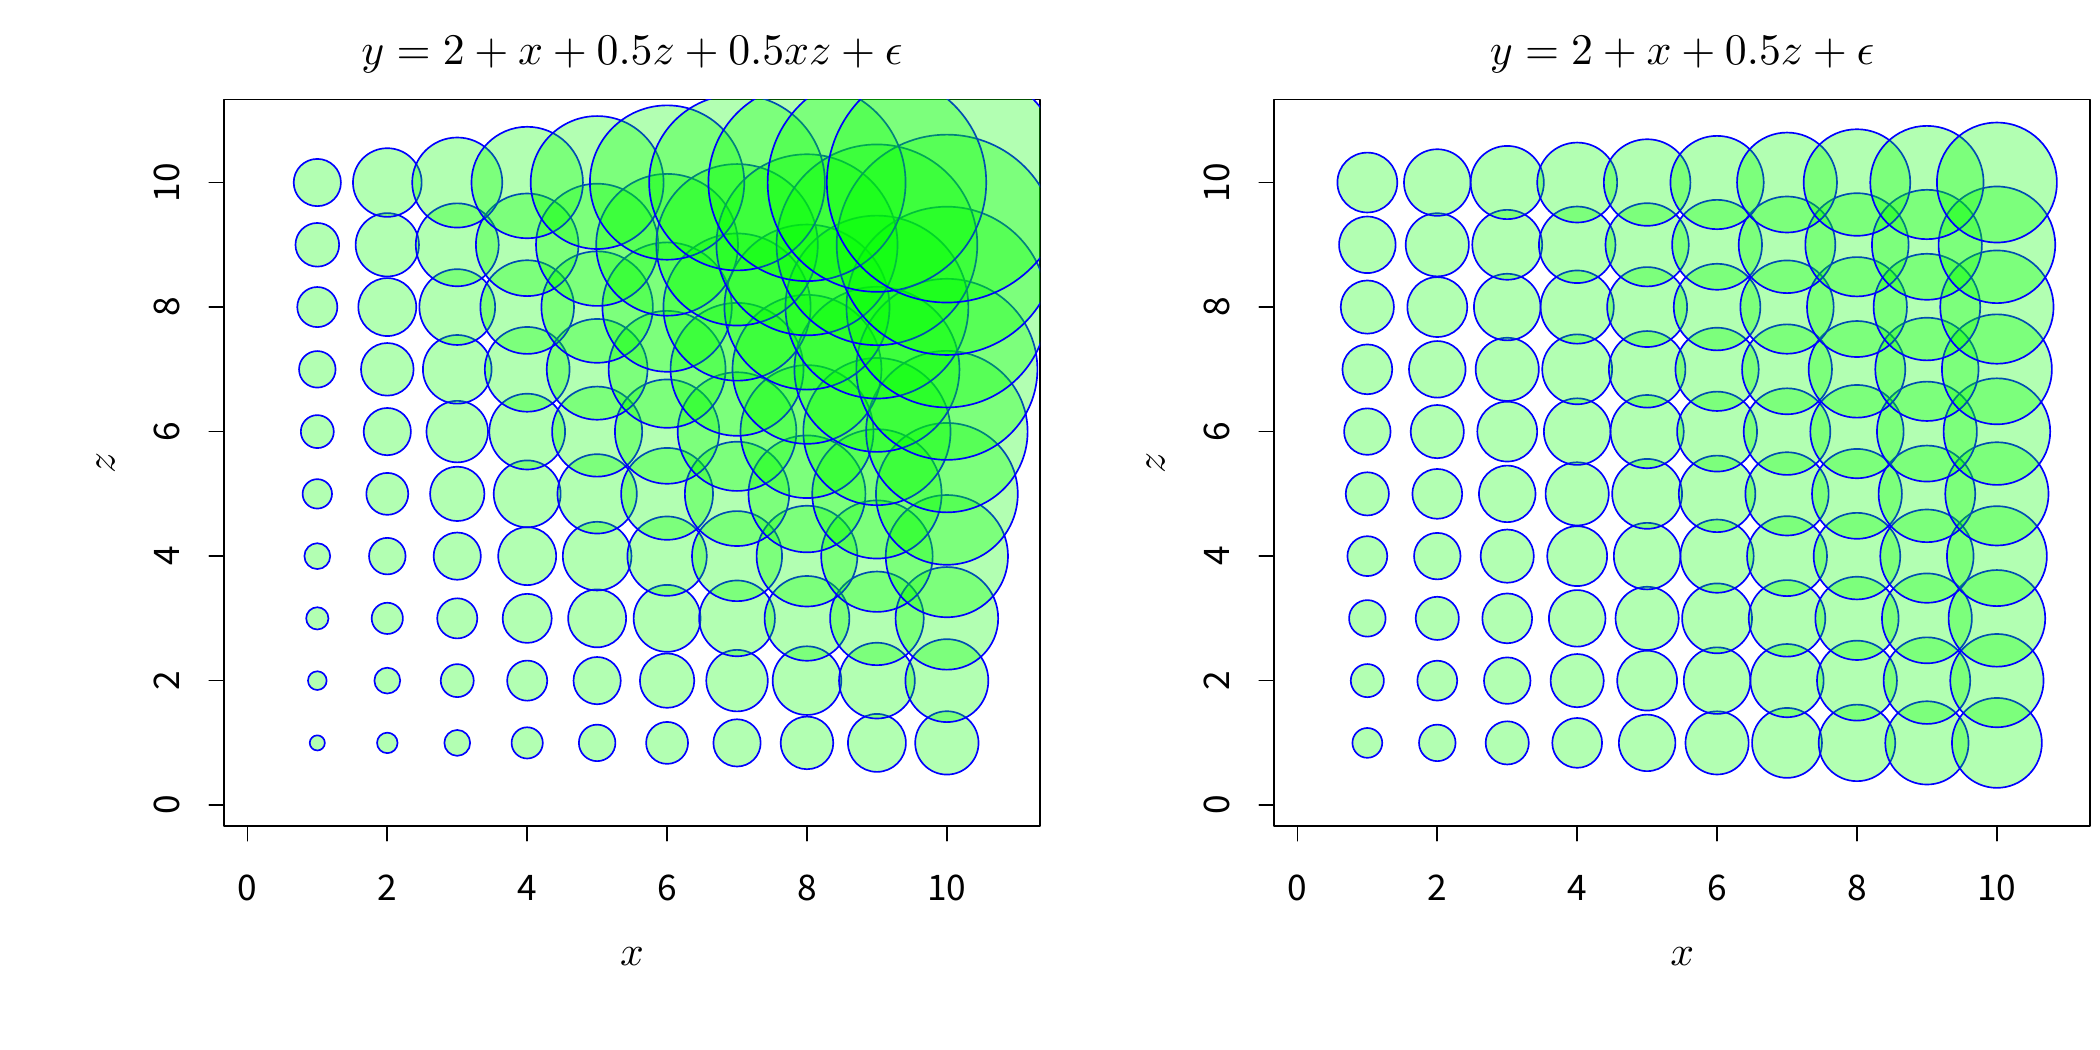 连续型自变量的交互作用气泡图：左图中 \(x\) 与 \(z\) 有交互效应，右图无交互效应。气泡图中，气泡的大小与真实的 \(y\) 值大小成正比，所以如果我们要查看自变量对 \(y\) 的影响，只需要看自变量对气泡大小的影响即可。以左图为例：例如分别给定 \(x=1\) 和 \(x=10\)，随着 \(z\) 的增大（从下向上看），\(y\) 值在增大，但 \(x=1\) 和 \(x=10\) 处的增大速度明显不一样（后者快），也就是说，\(z\) 对 \(y\) 的影响大小受 \(x\) 的取值水平影响。同理可以看右图，任意给定 \(x\) 值，\(y\) 随着 \(z\) 的增大速度都一样，说明 \(x\) 与 \(z\) 之间没有交互效应。